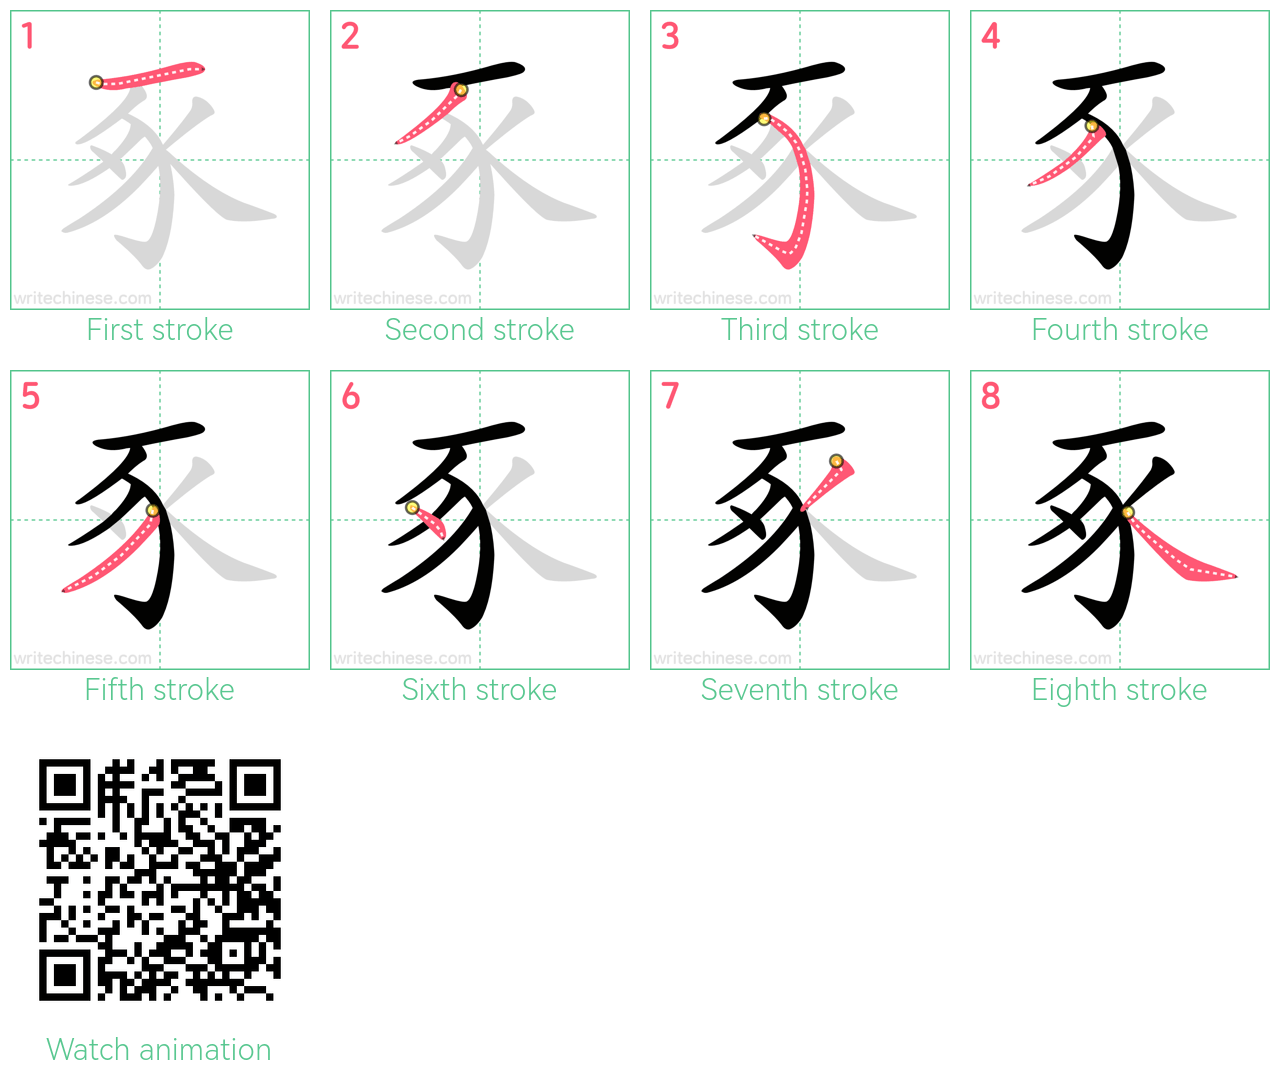 豖 step-by-step stroke order diagrams